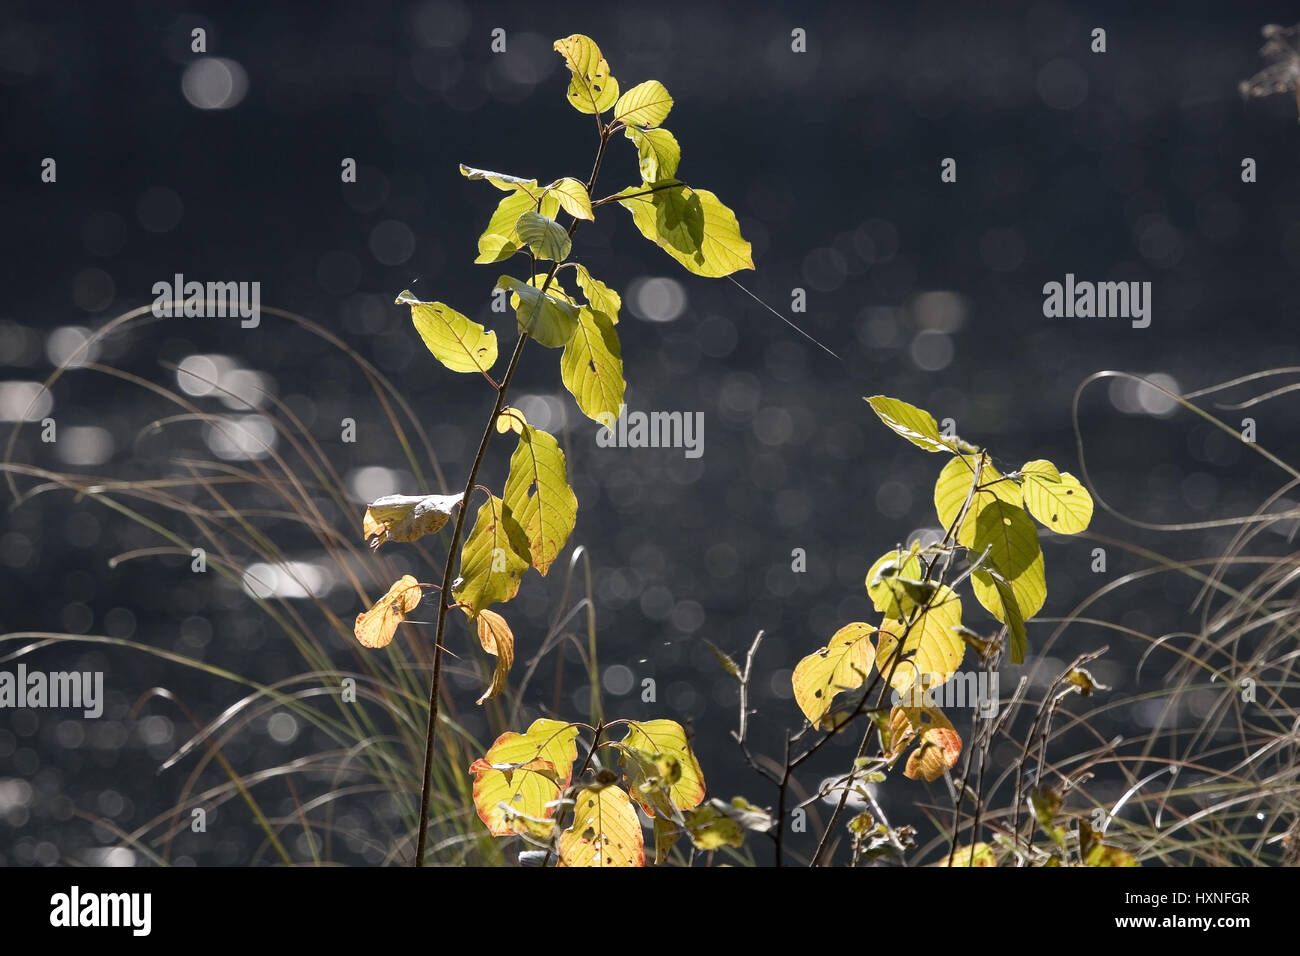 Árbol de follaje joven en la orilla de pie en la luz de fondo. Masuria Polonia, Junger Laubbaum am Ufer Gegenlicht stehend im.Masuren Polen Foto de stock